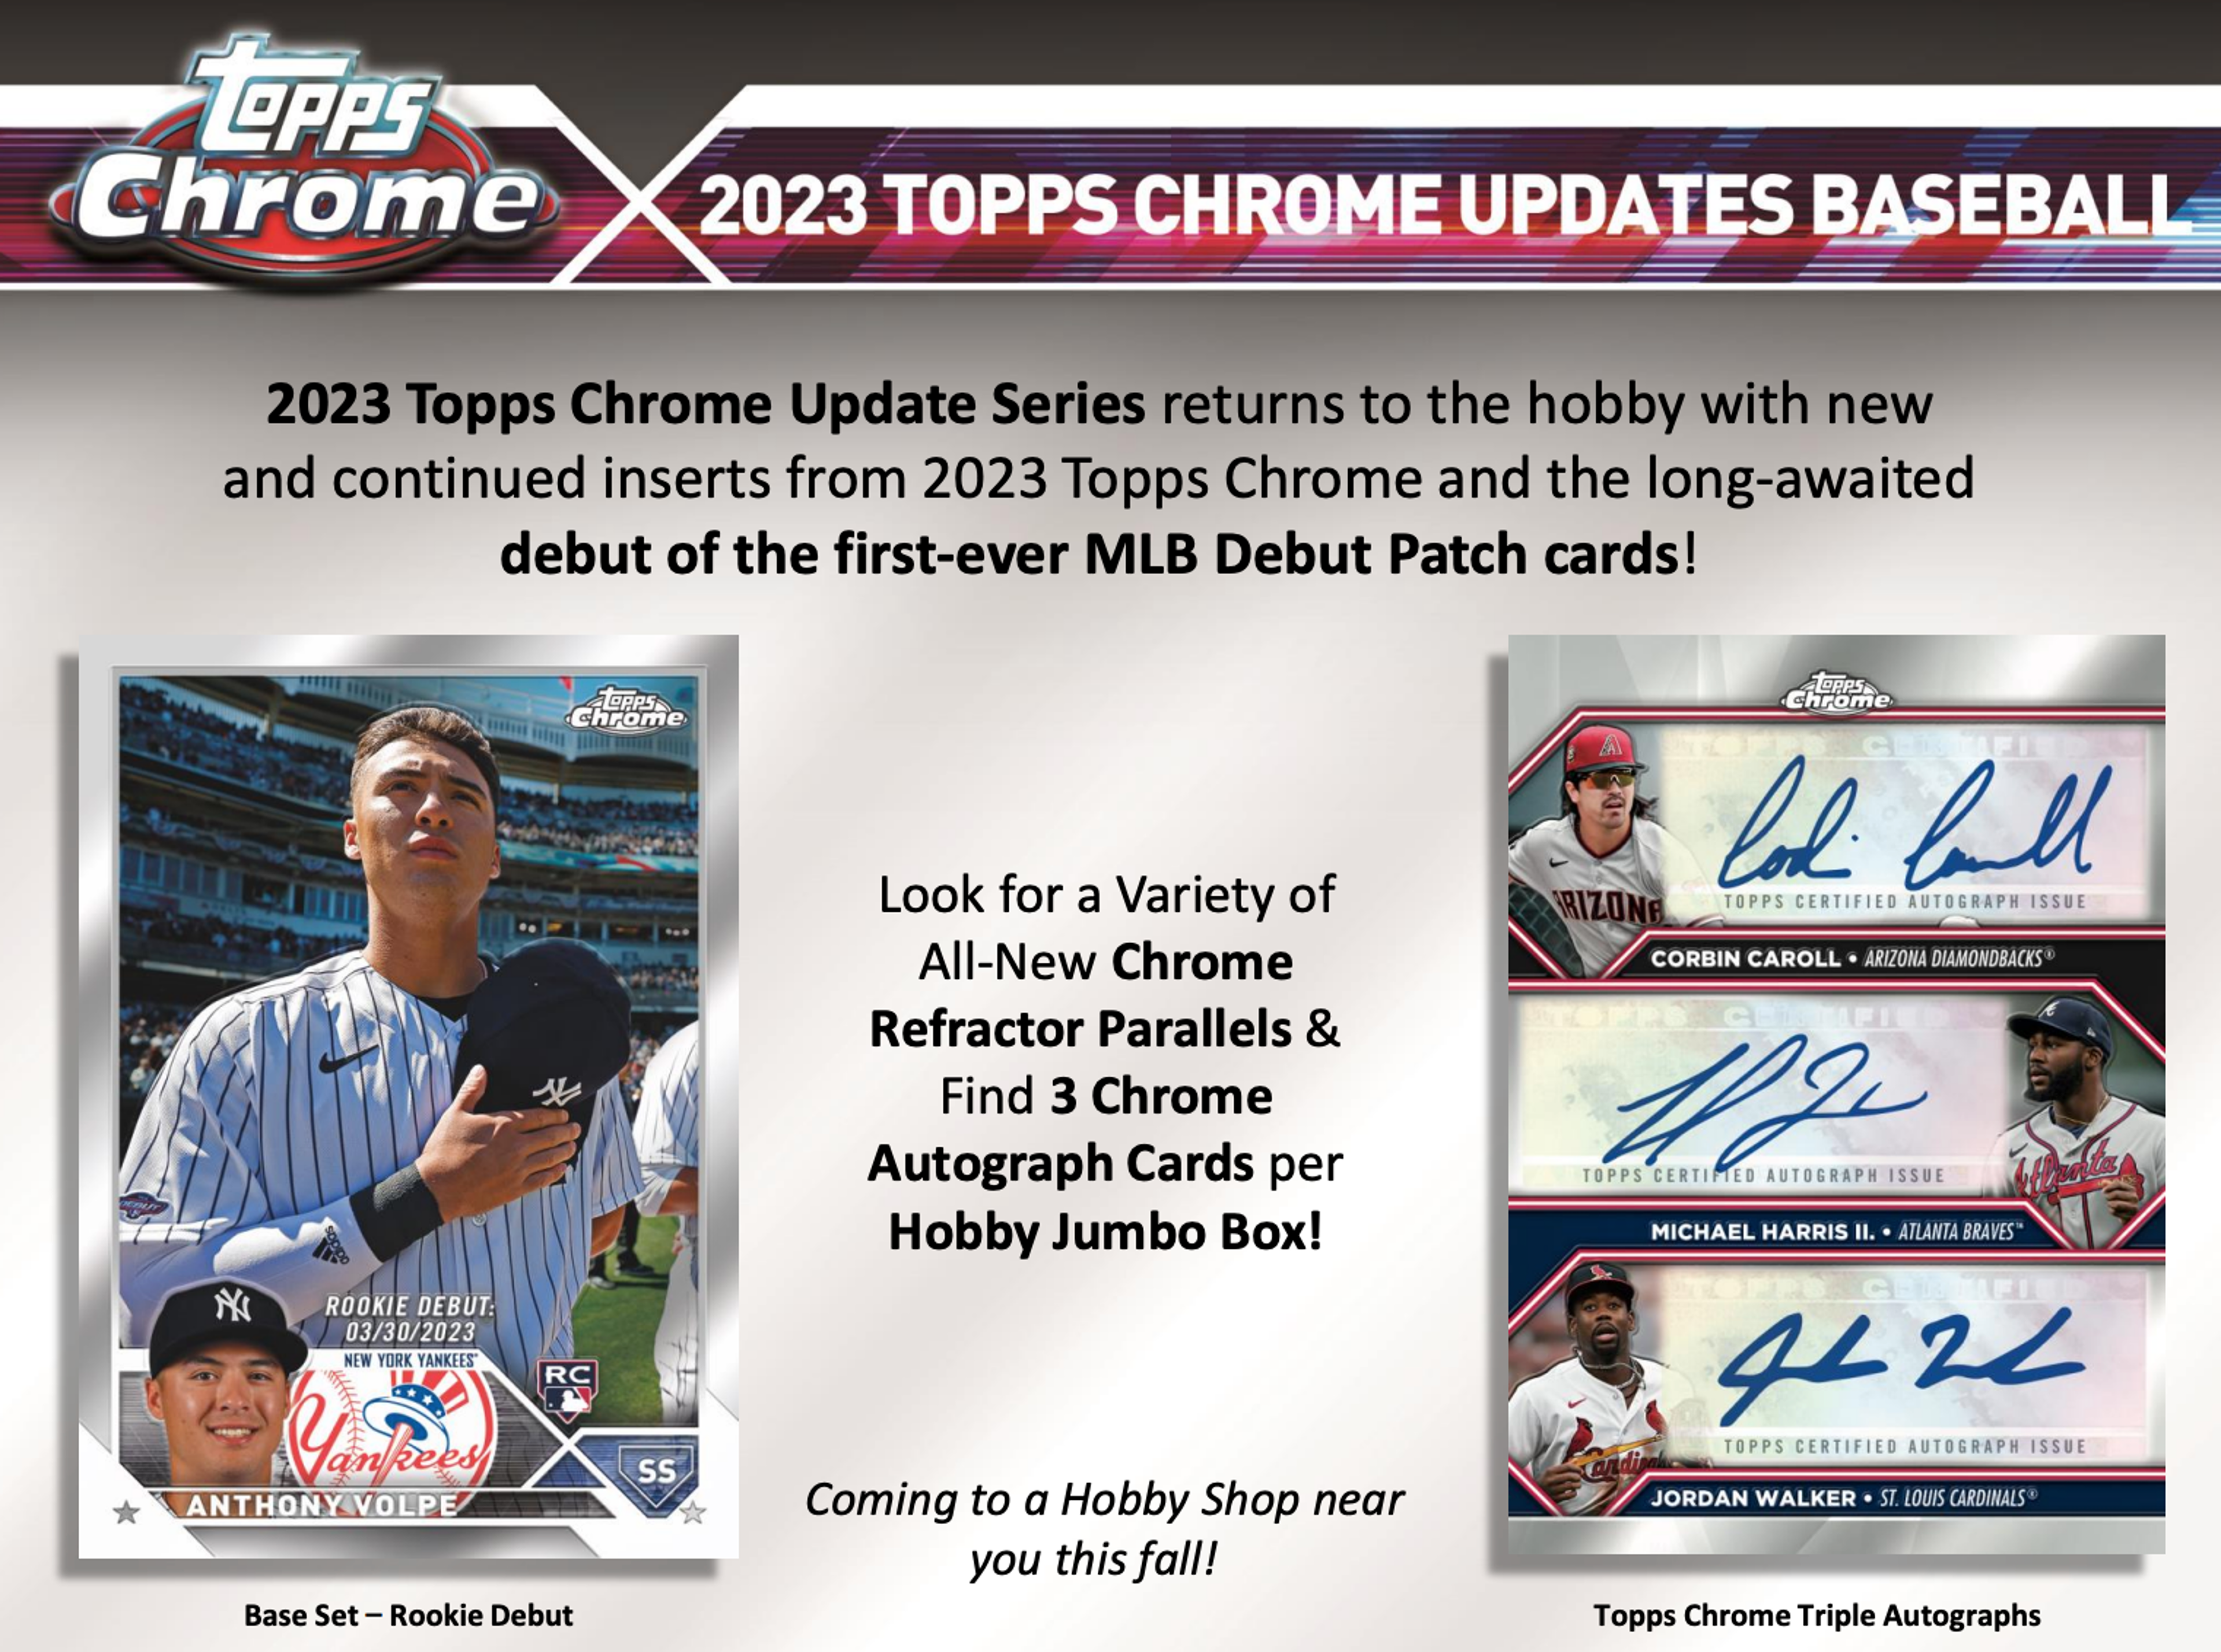 Alternate View 7 of 2023 Topps Chrome Update Series Baseball Breaker's Delight Box